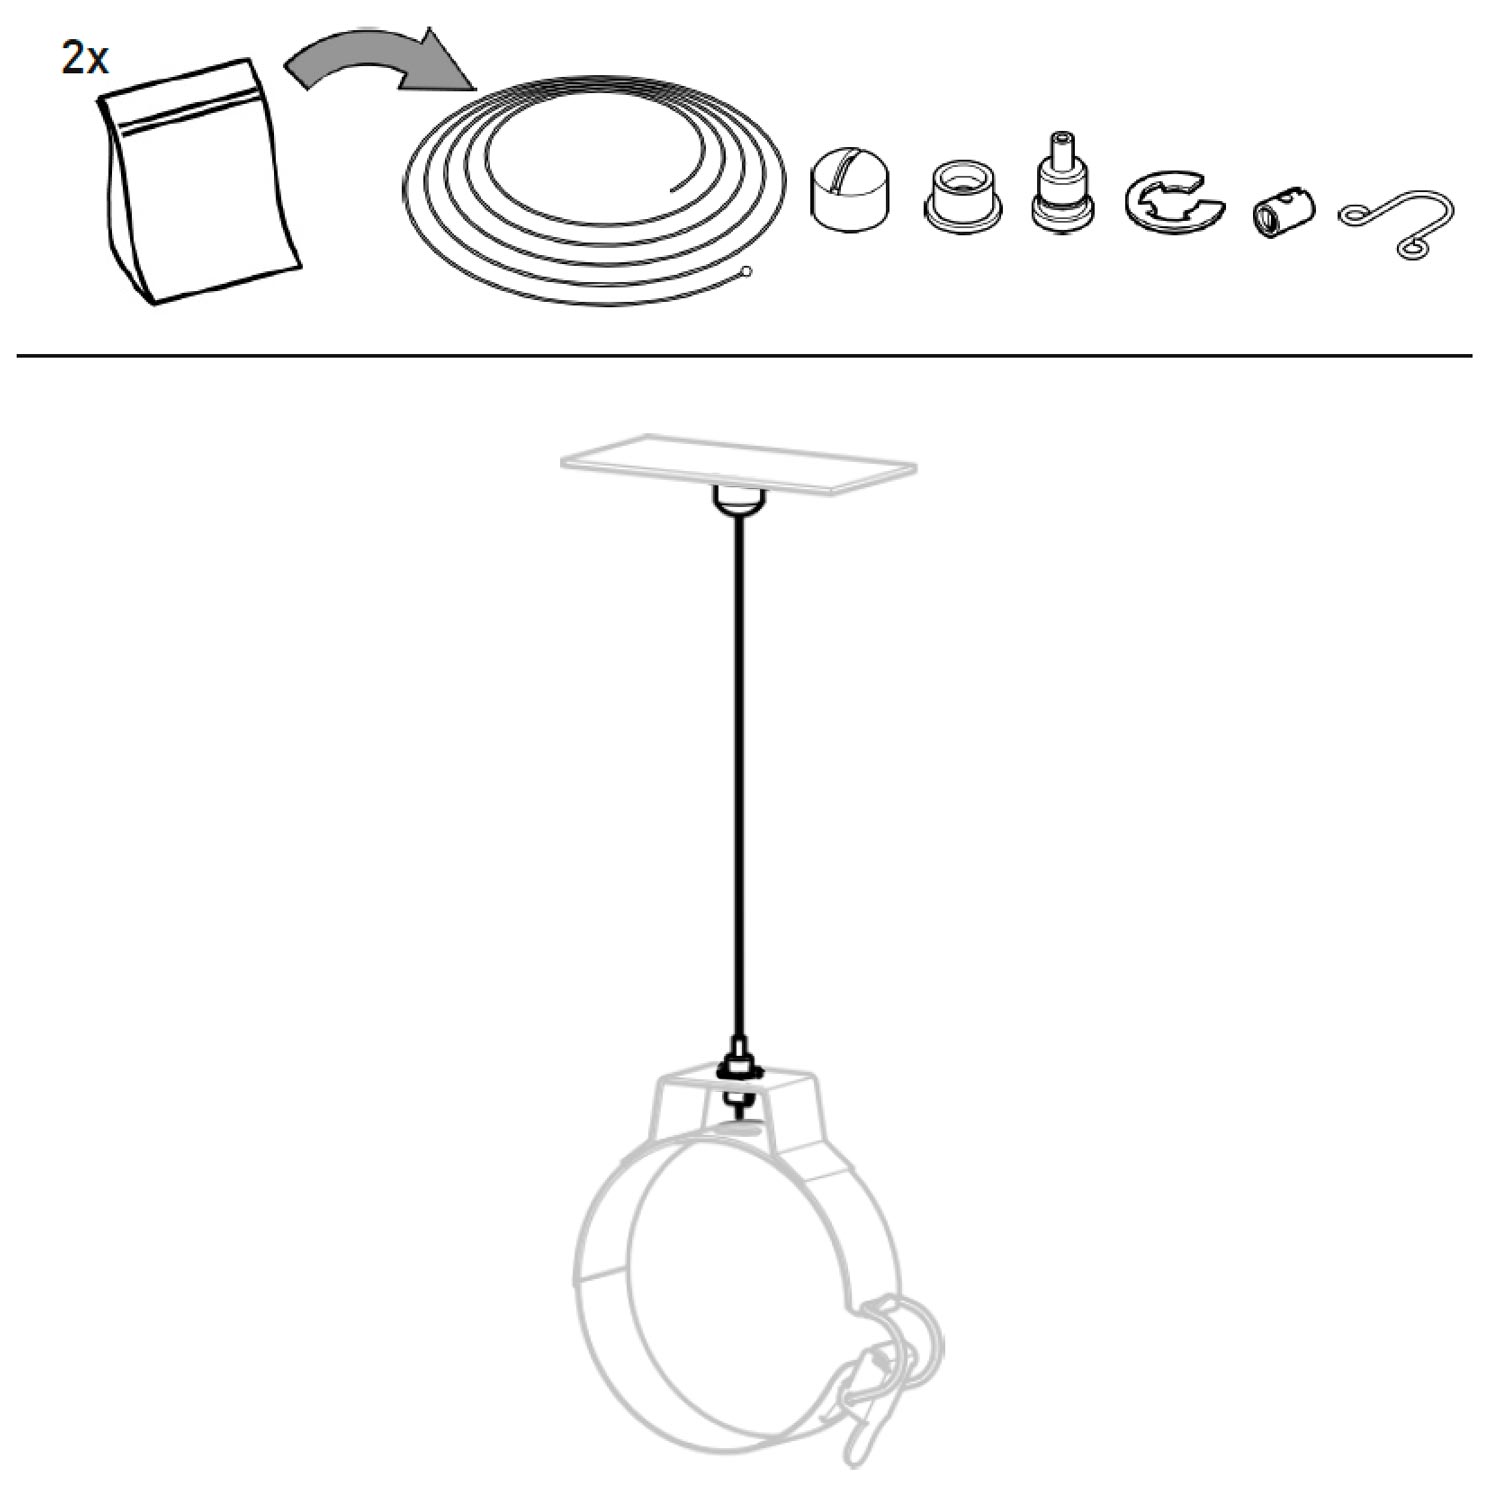 Glasröhren-Leuchte MUSSET, Ø 10 cm: Aufhängungs-Kit mit 2 x 300 cm Stahlseil im Lieferumfang